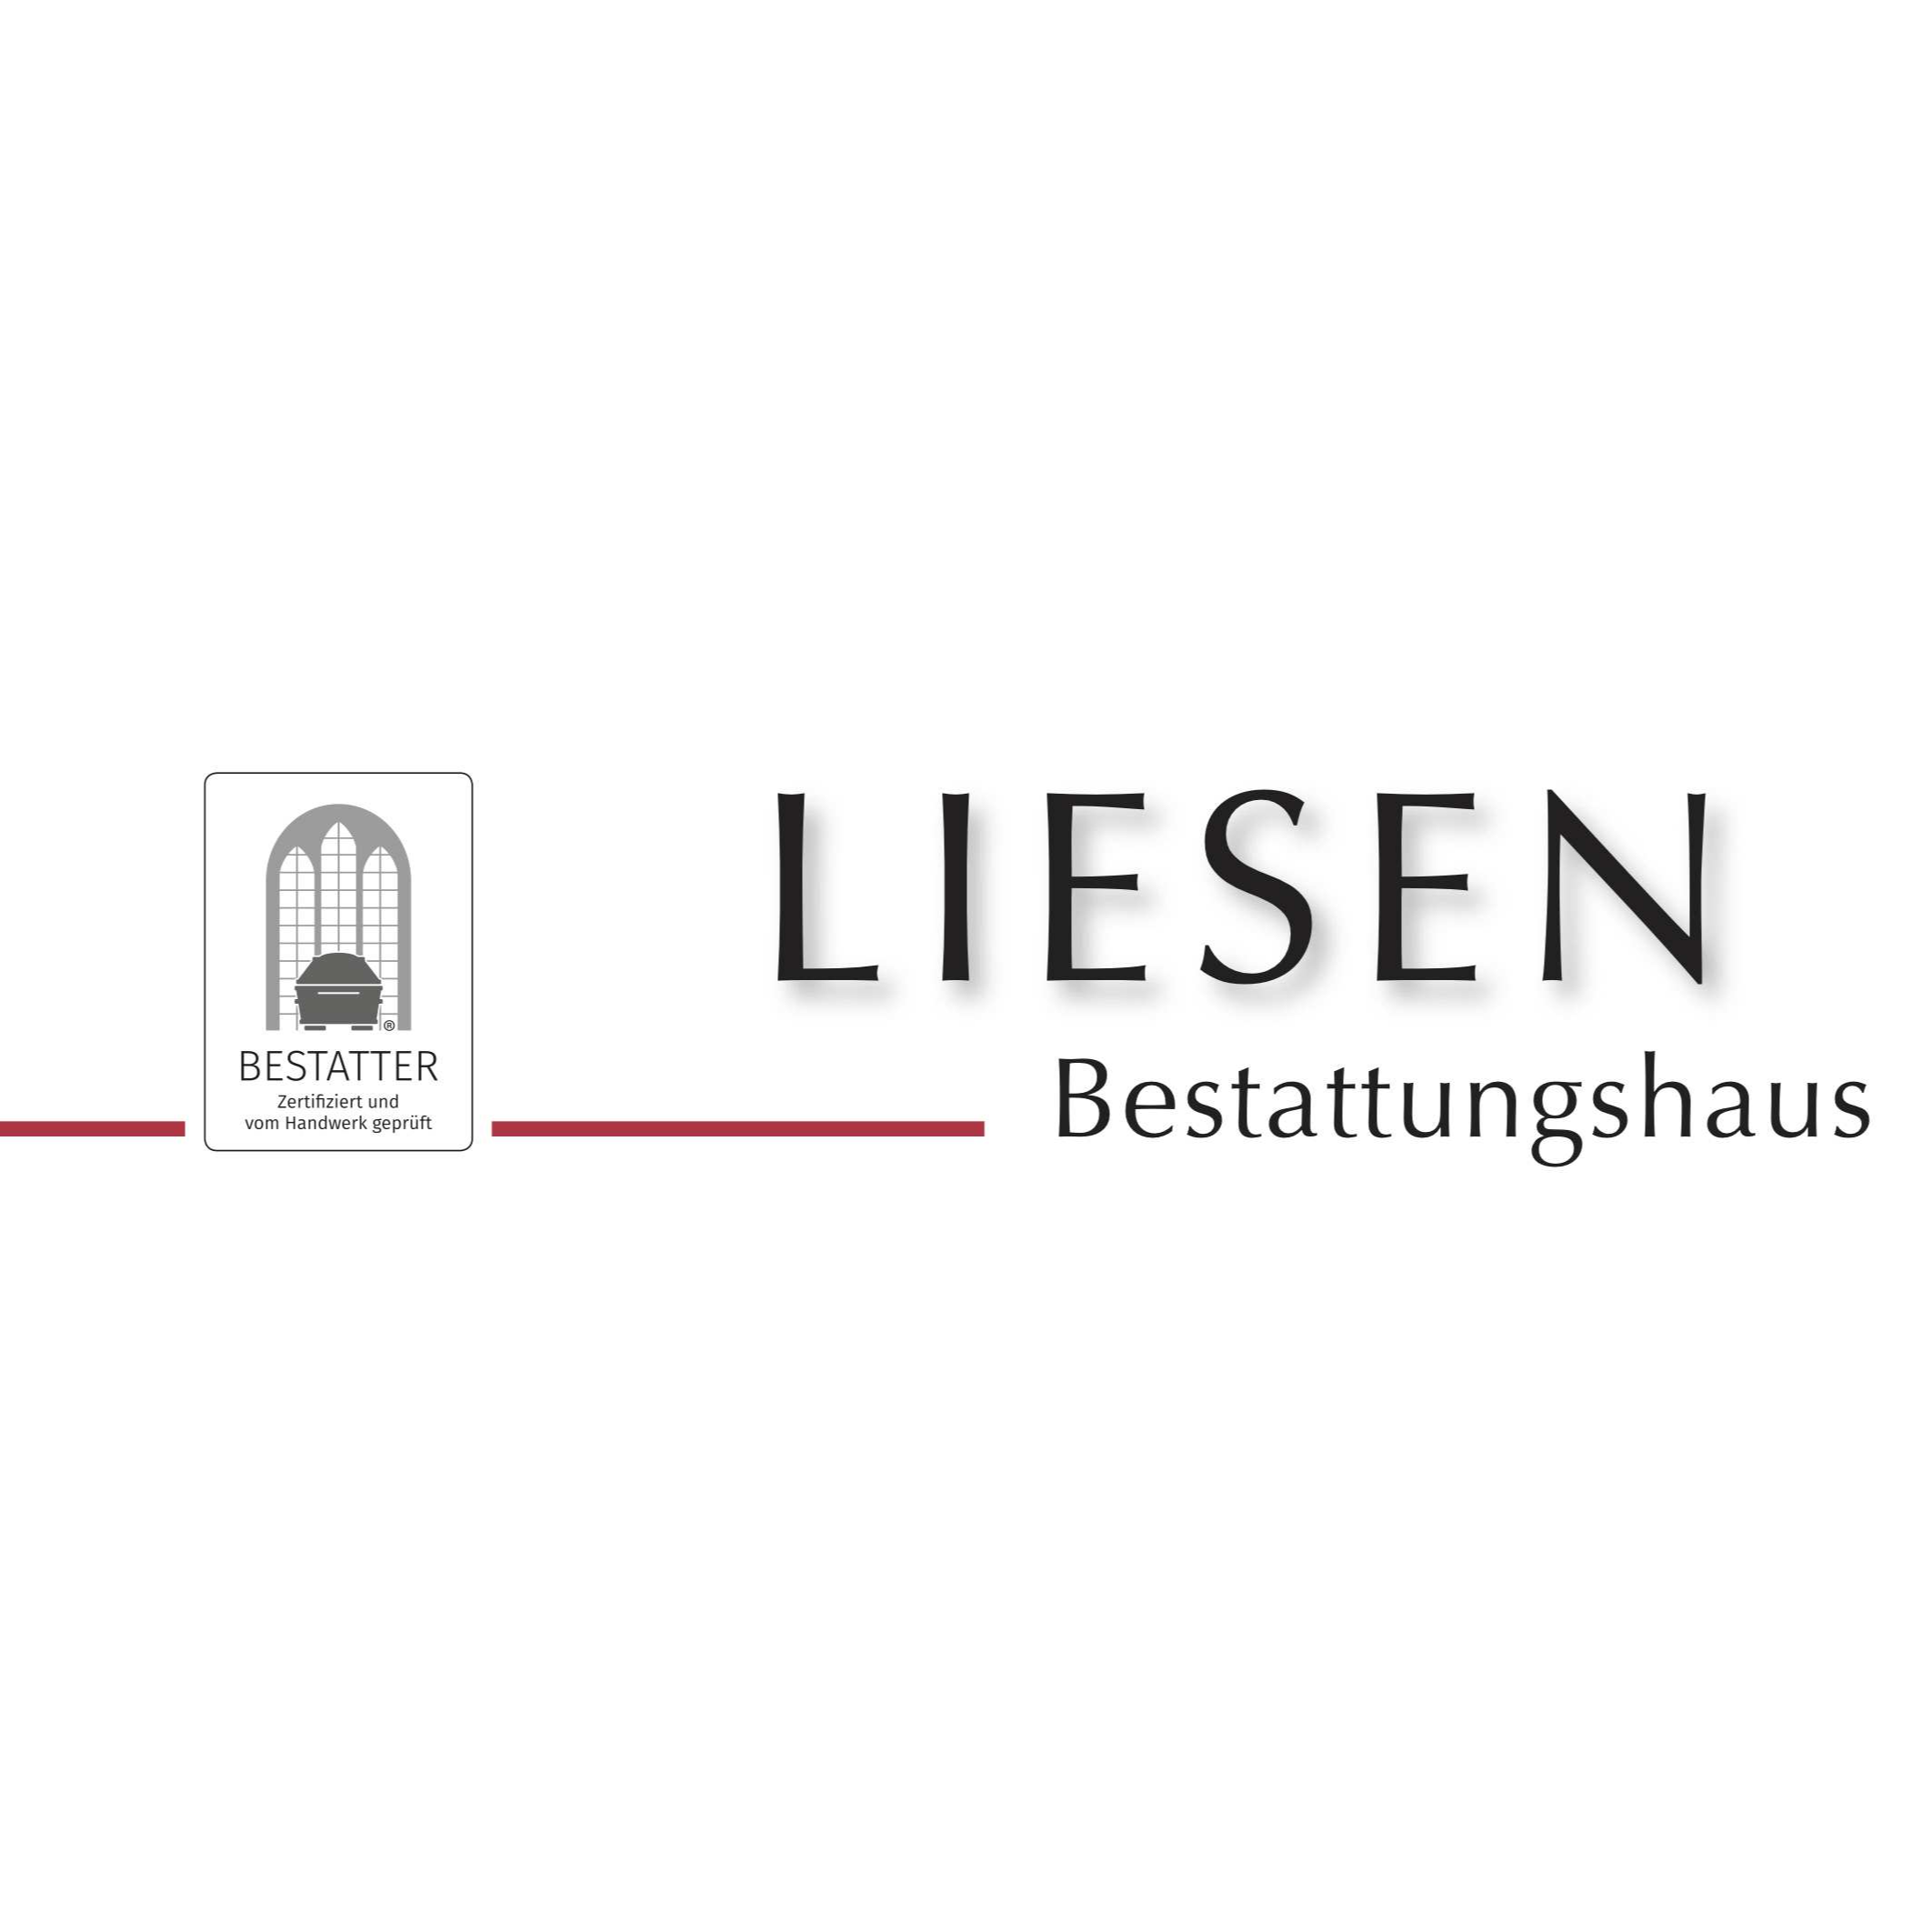 Liesen GmbH Bestattungshaus - Schreinerei in Duisburg